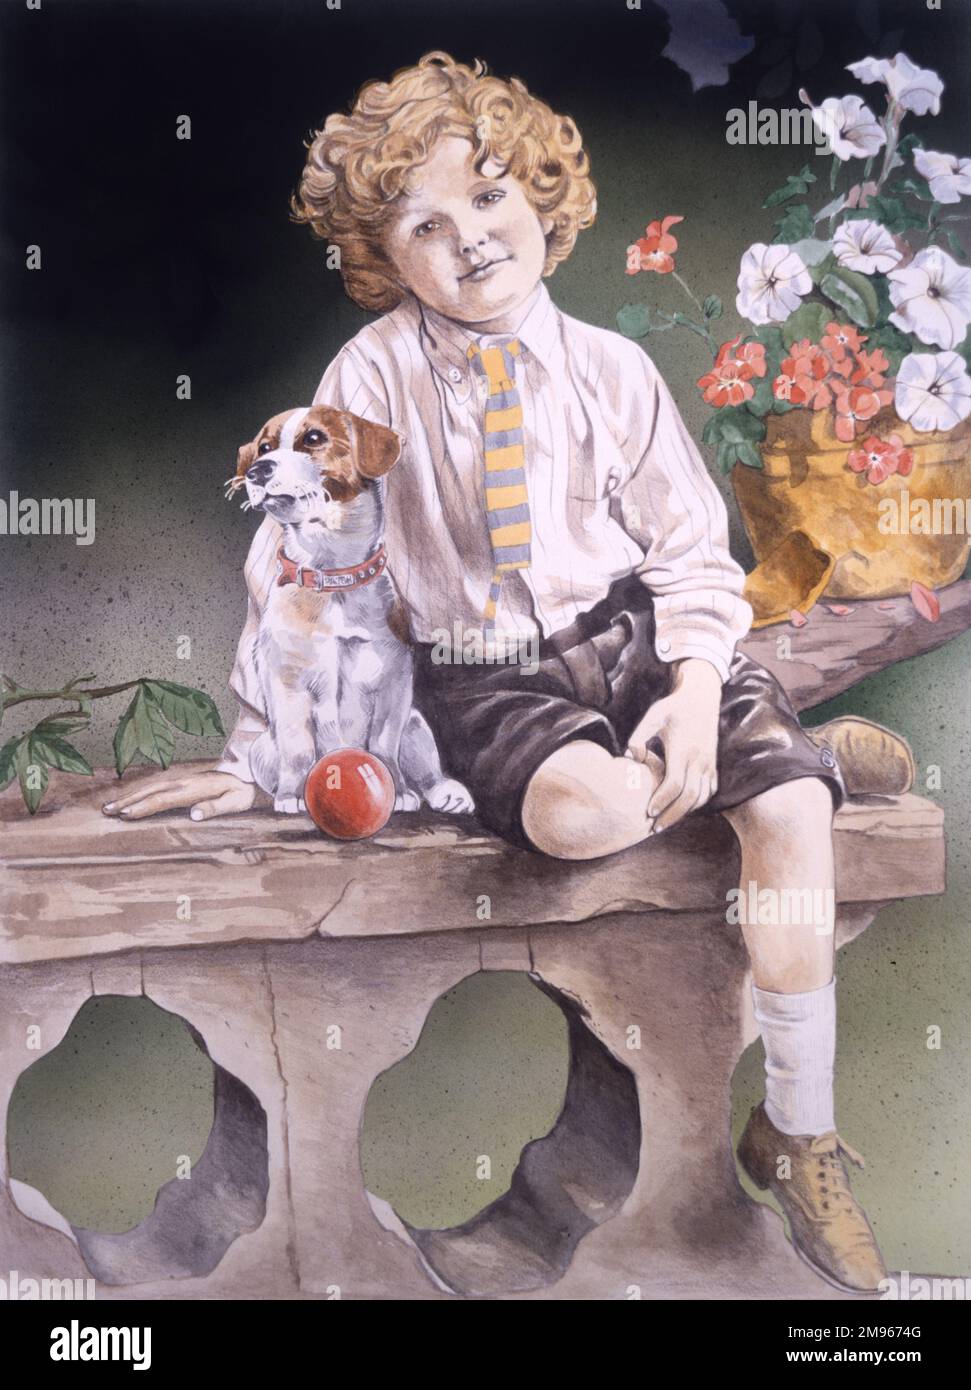 Un jeune garçon aux cheveux dorés avec son chien d'animal de compagnie assis sur un mur de pierre ornementale avec une jambe sur son autre genou. Peinture par Malcolm Greensmith Banque D'Images